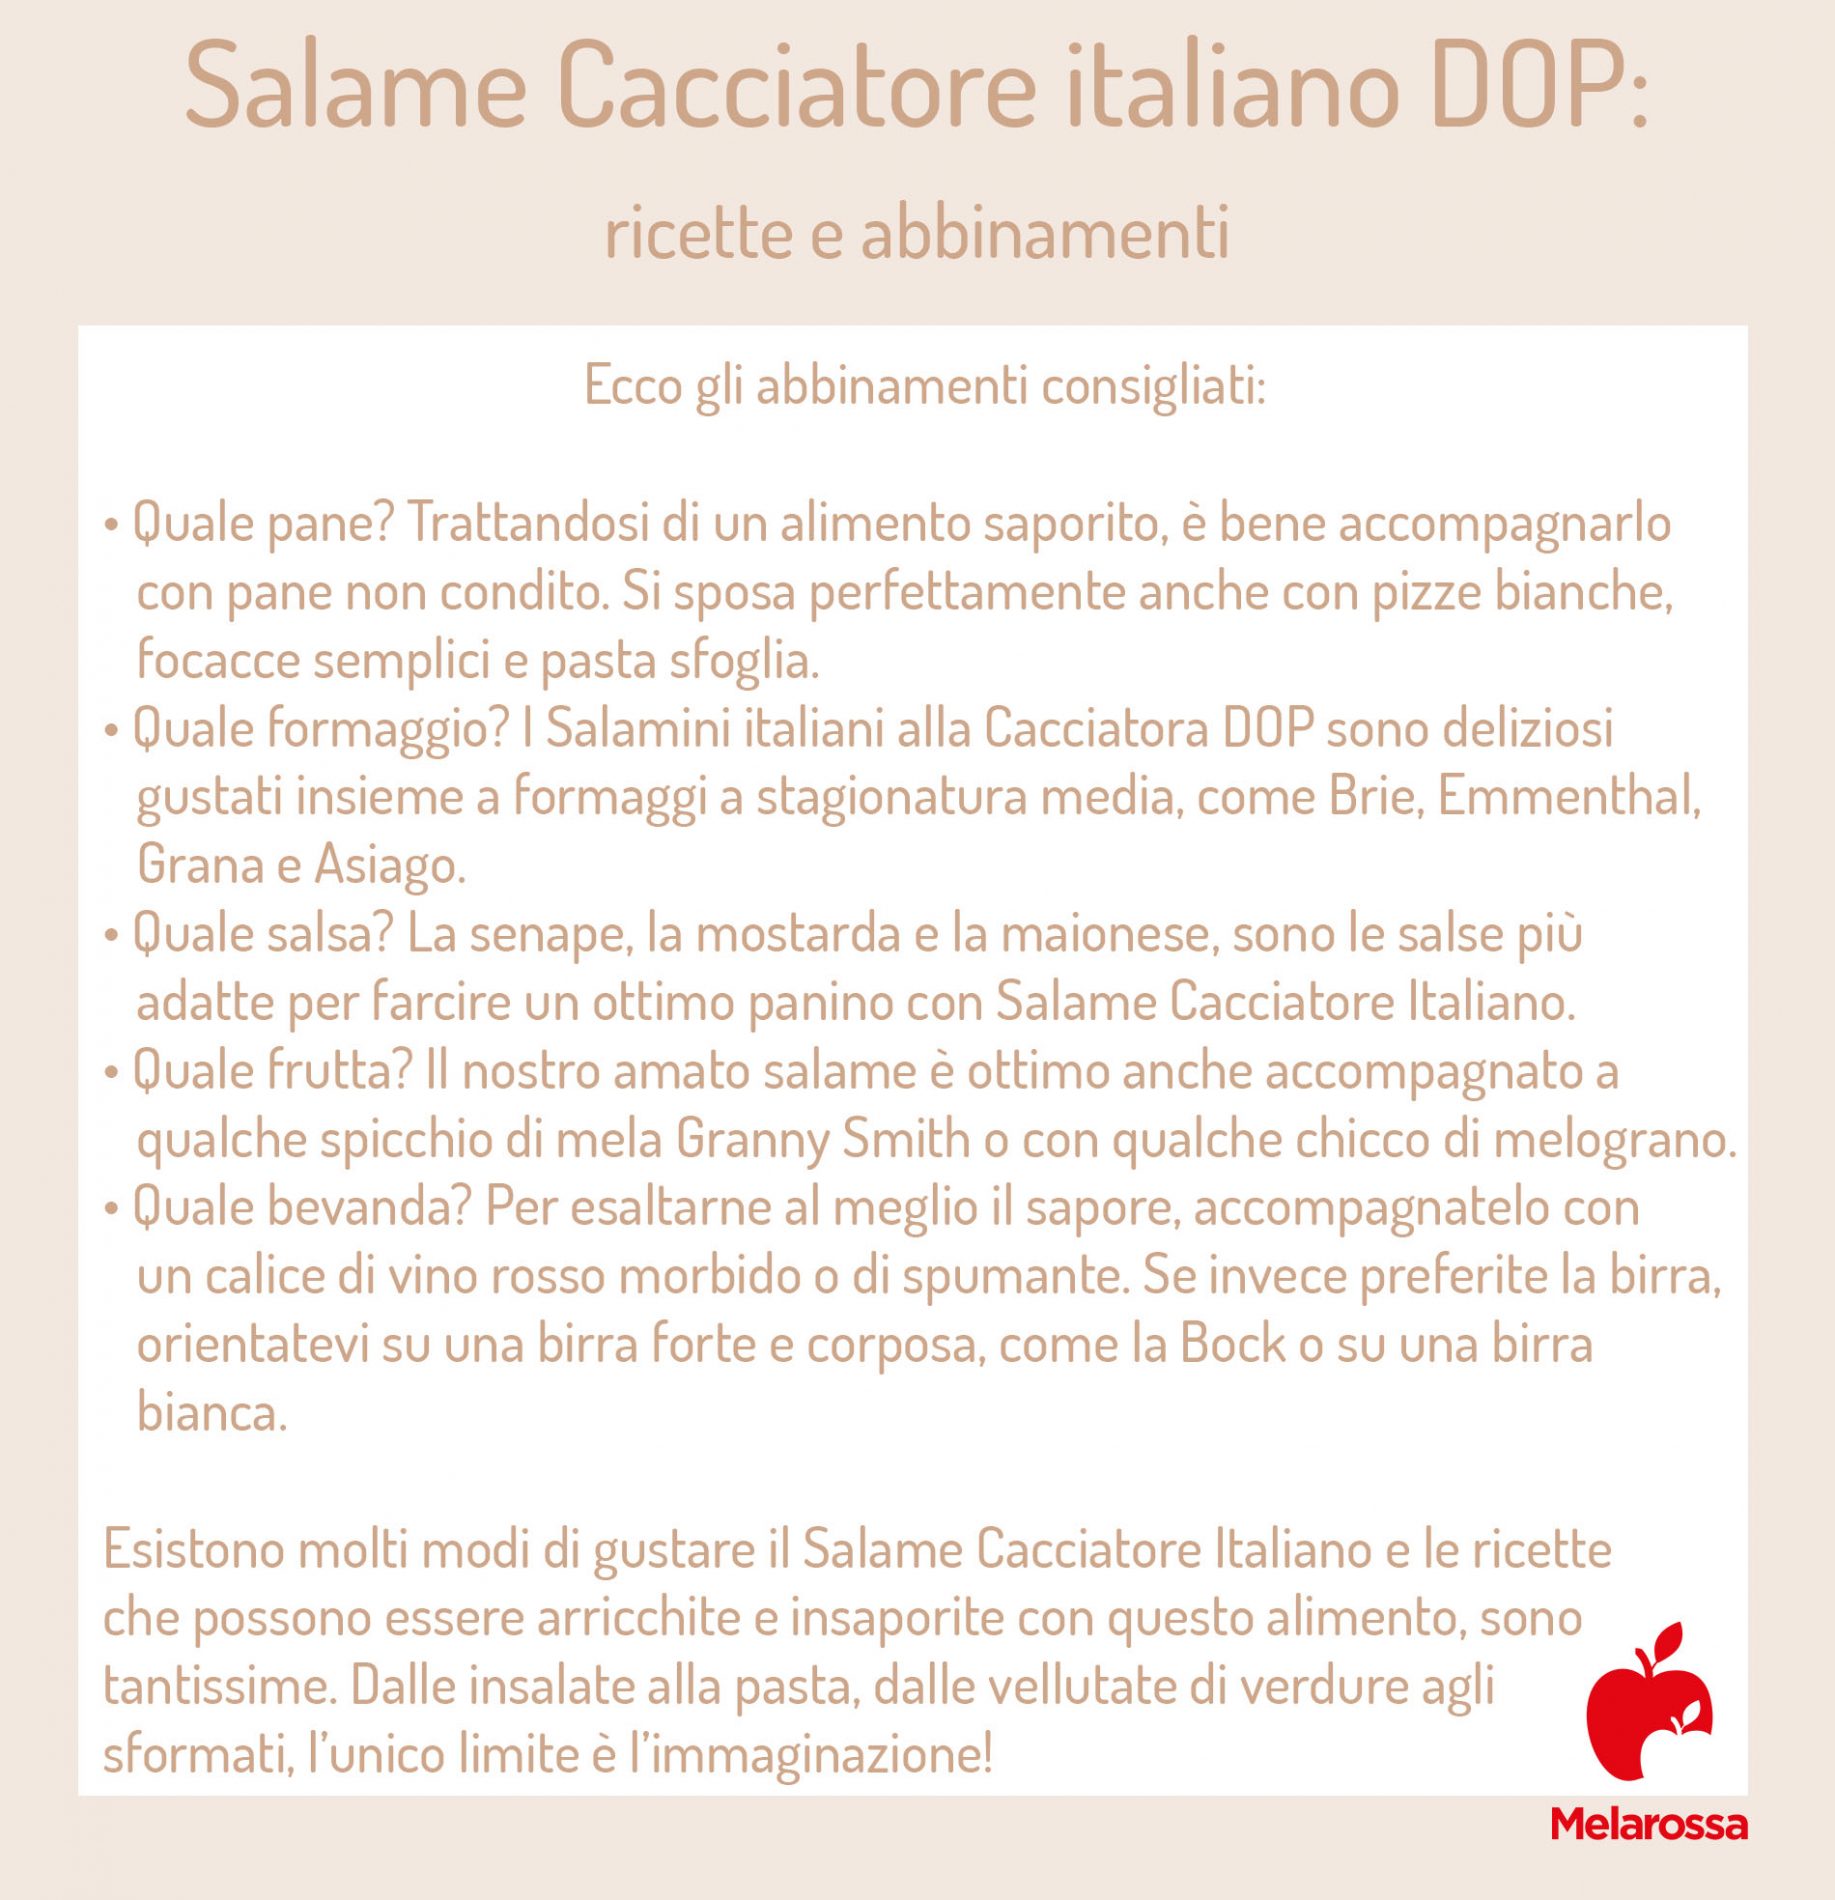 salame cacciatore Italiano: ricette e abbinamenti 